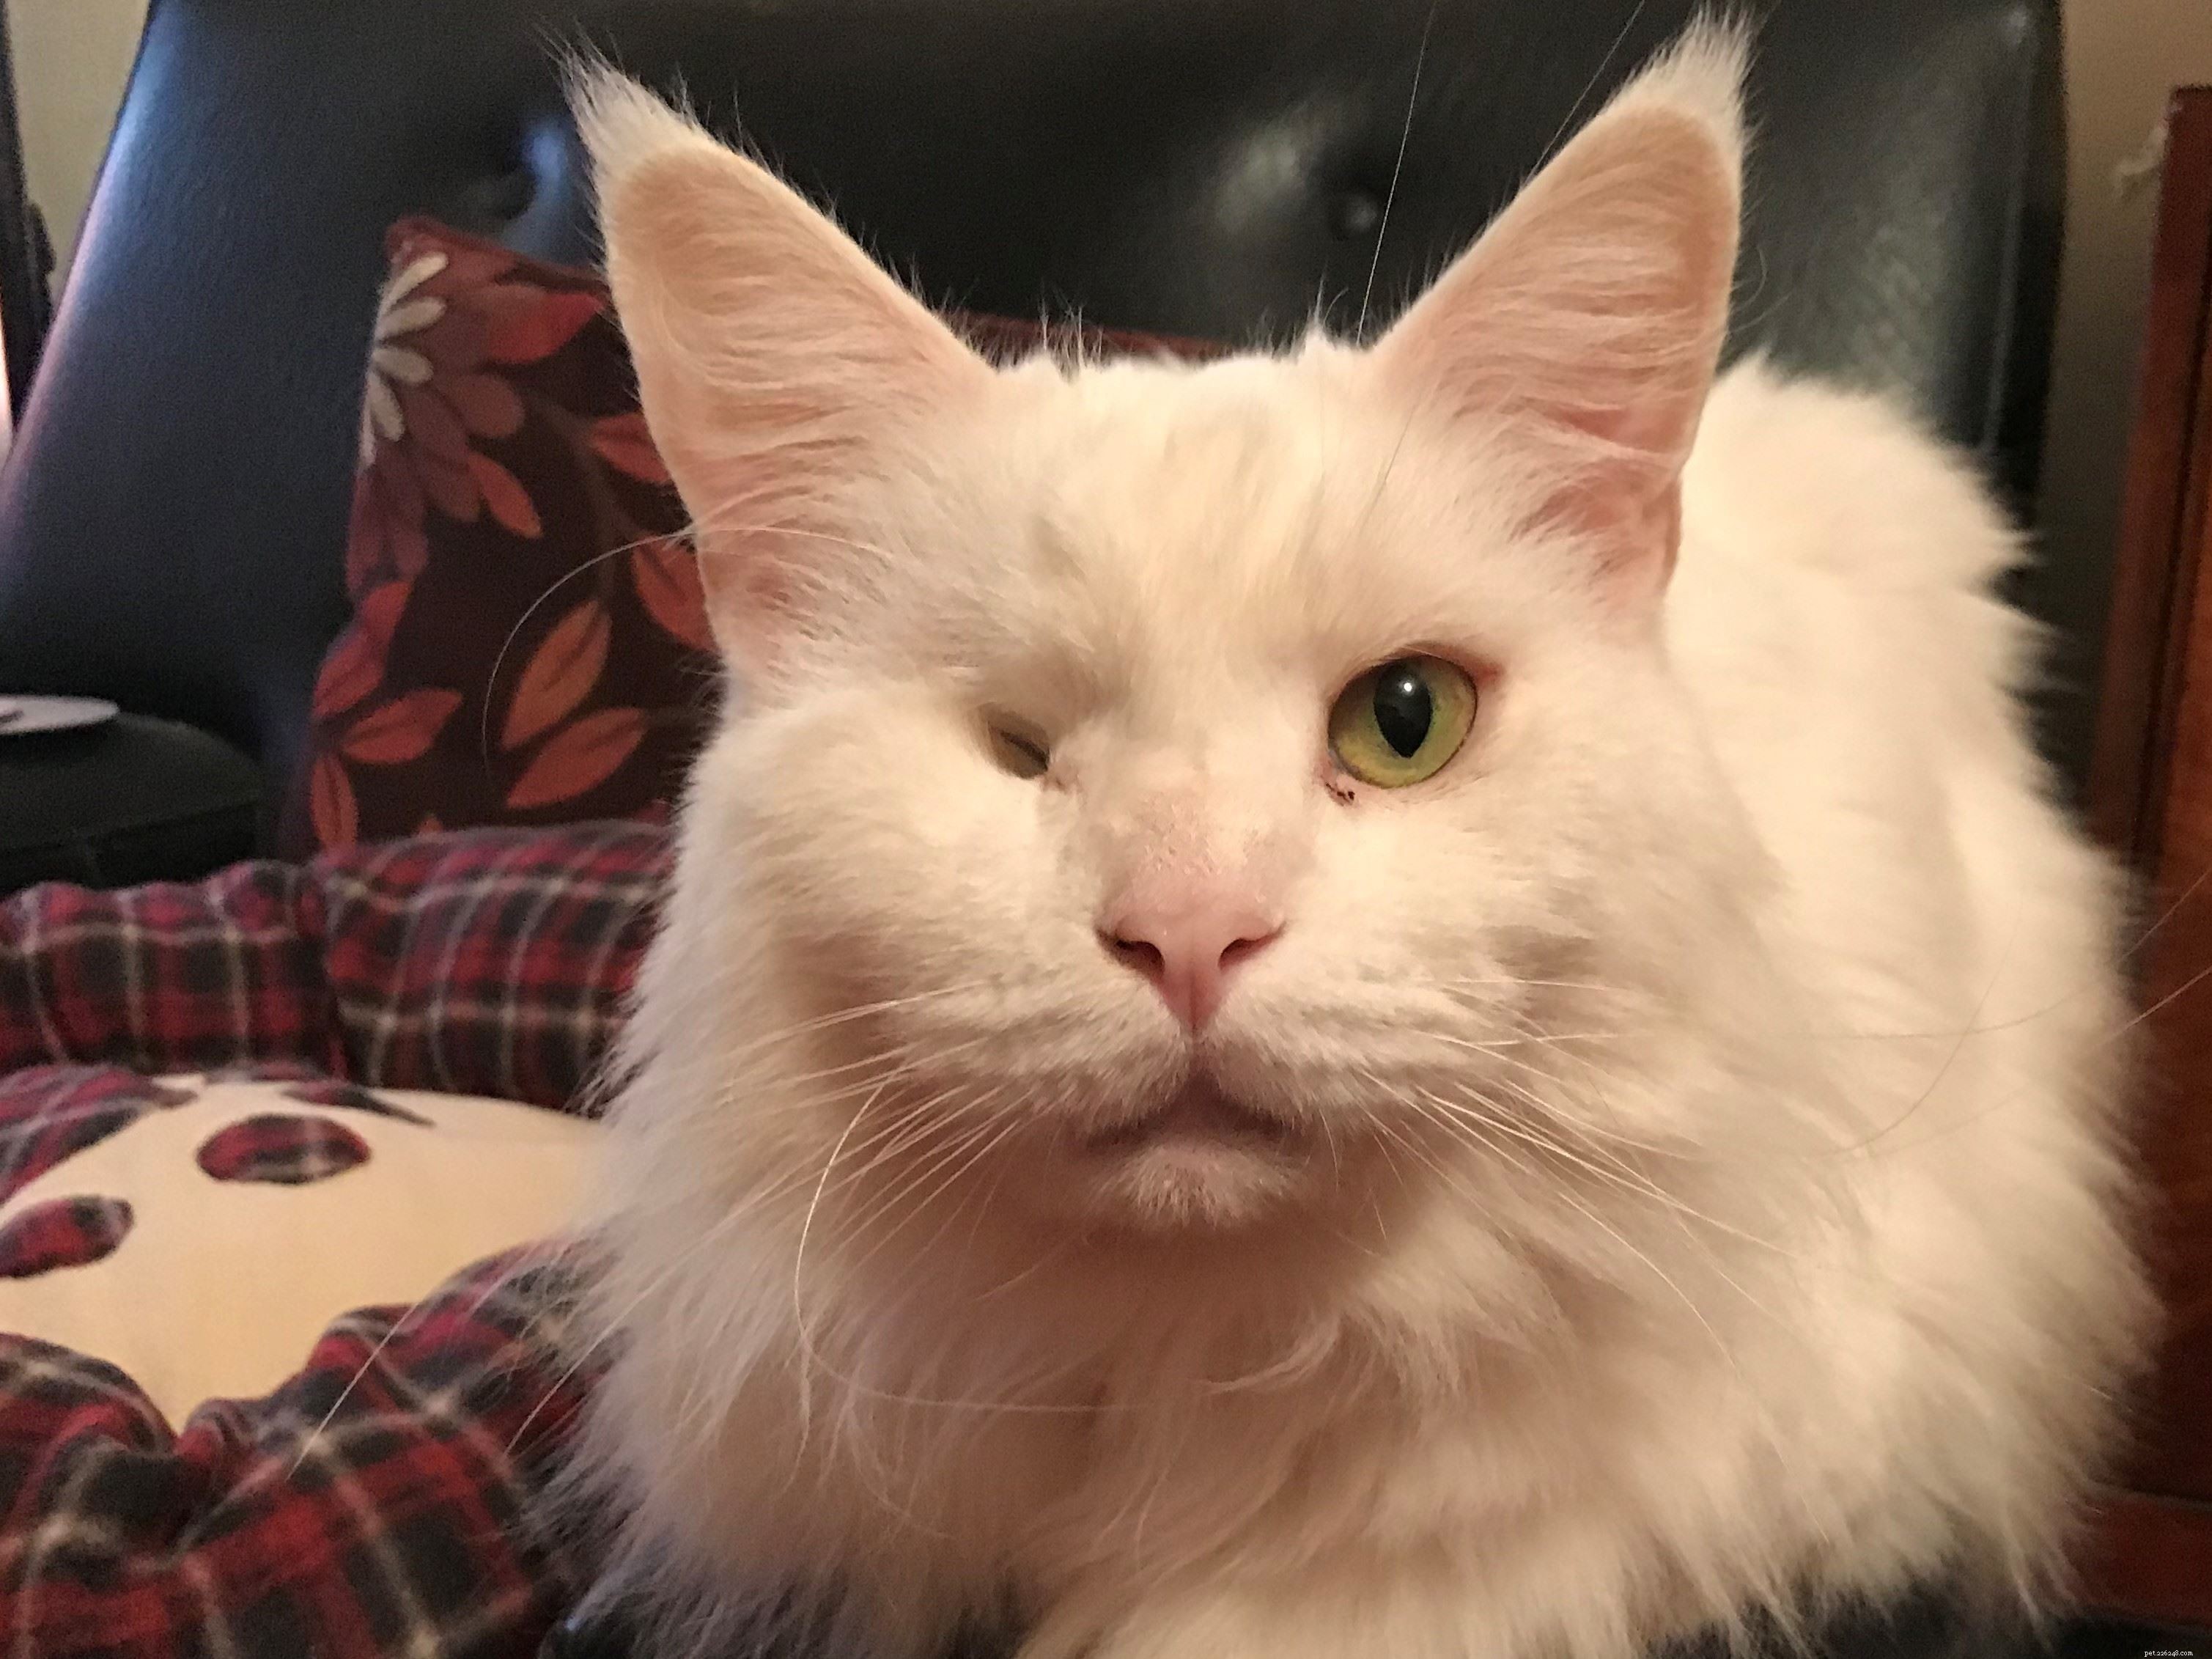 Il programma Cat Guardians ha dato a Nelson con un occhio solo una seconda possibilità di trovare un nuovo proprietario amorevole